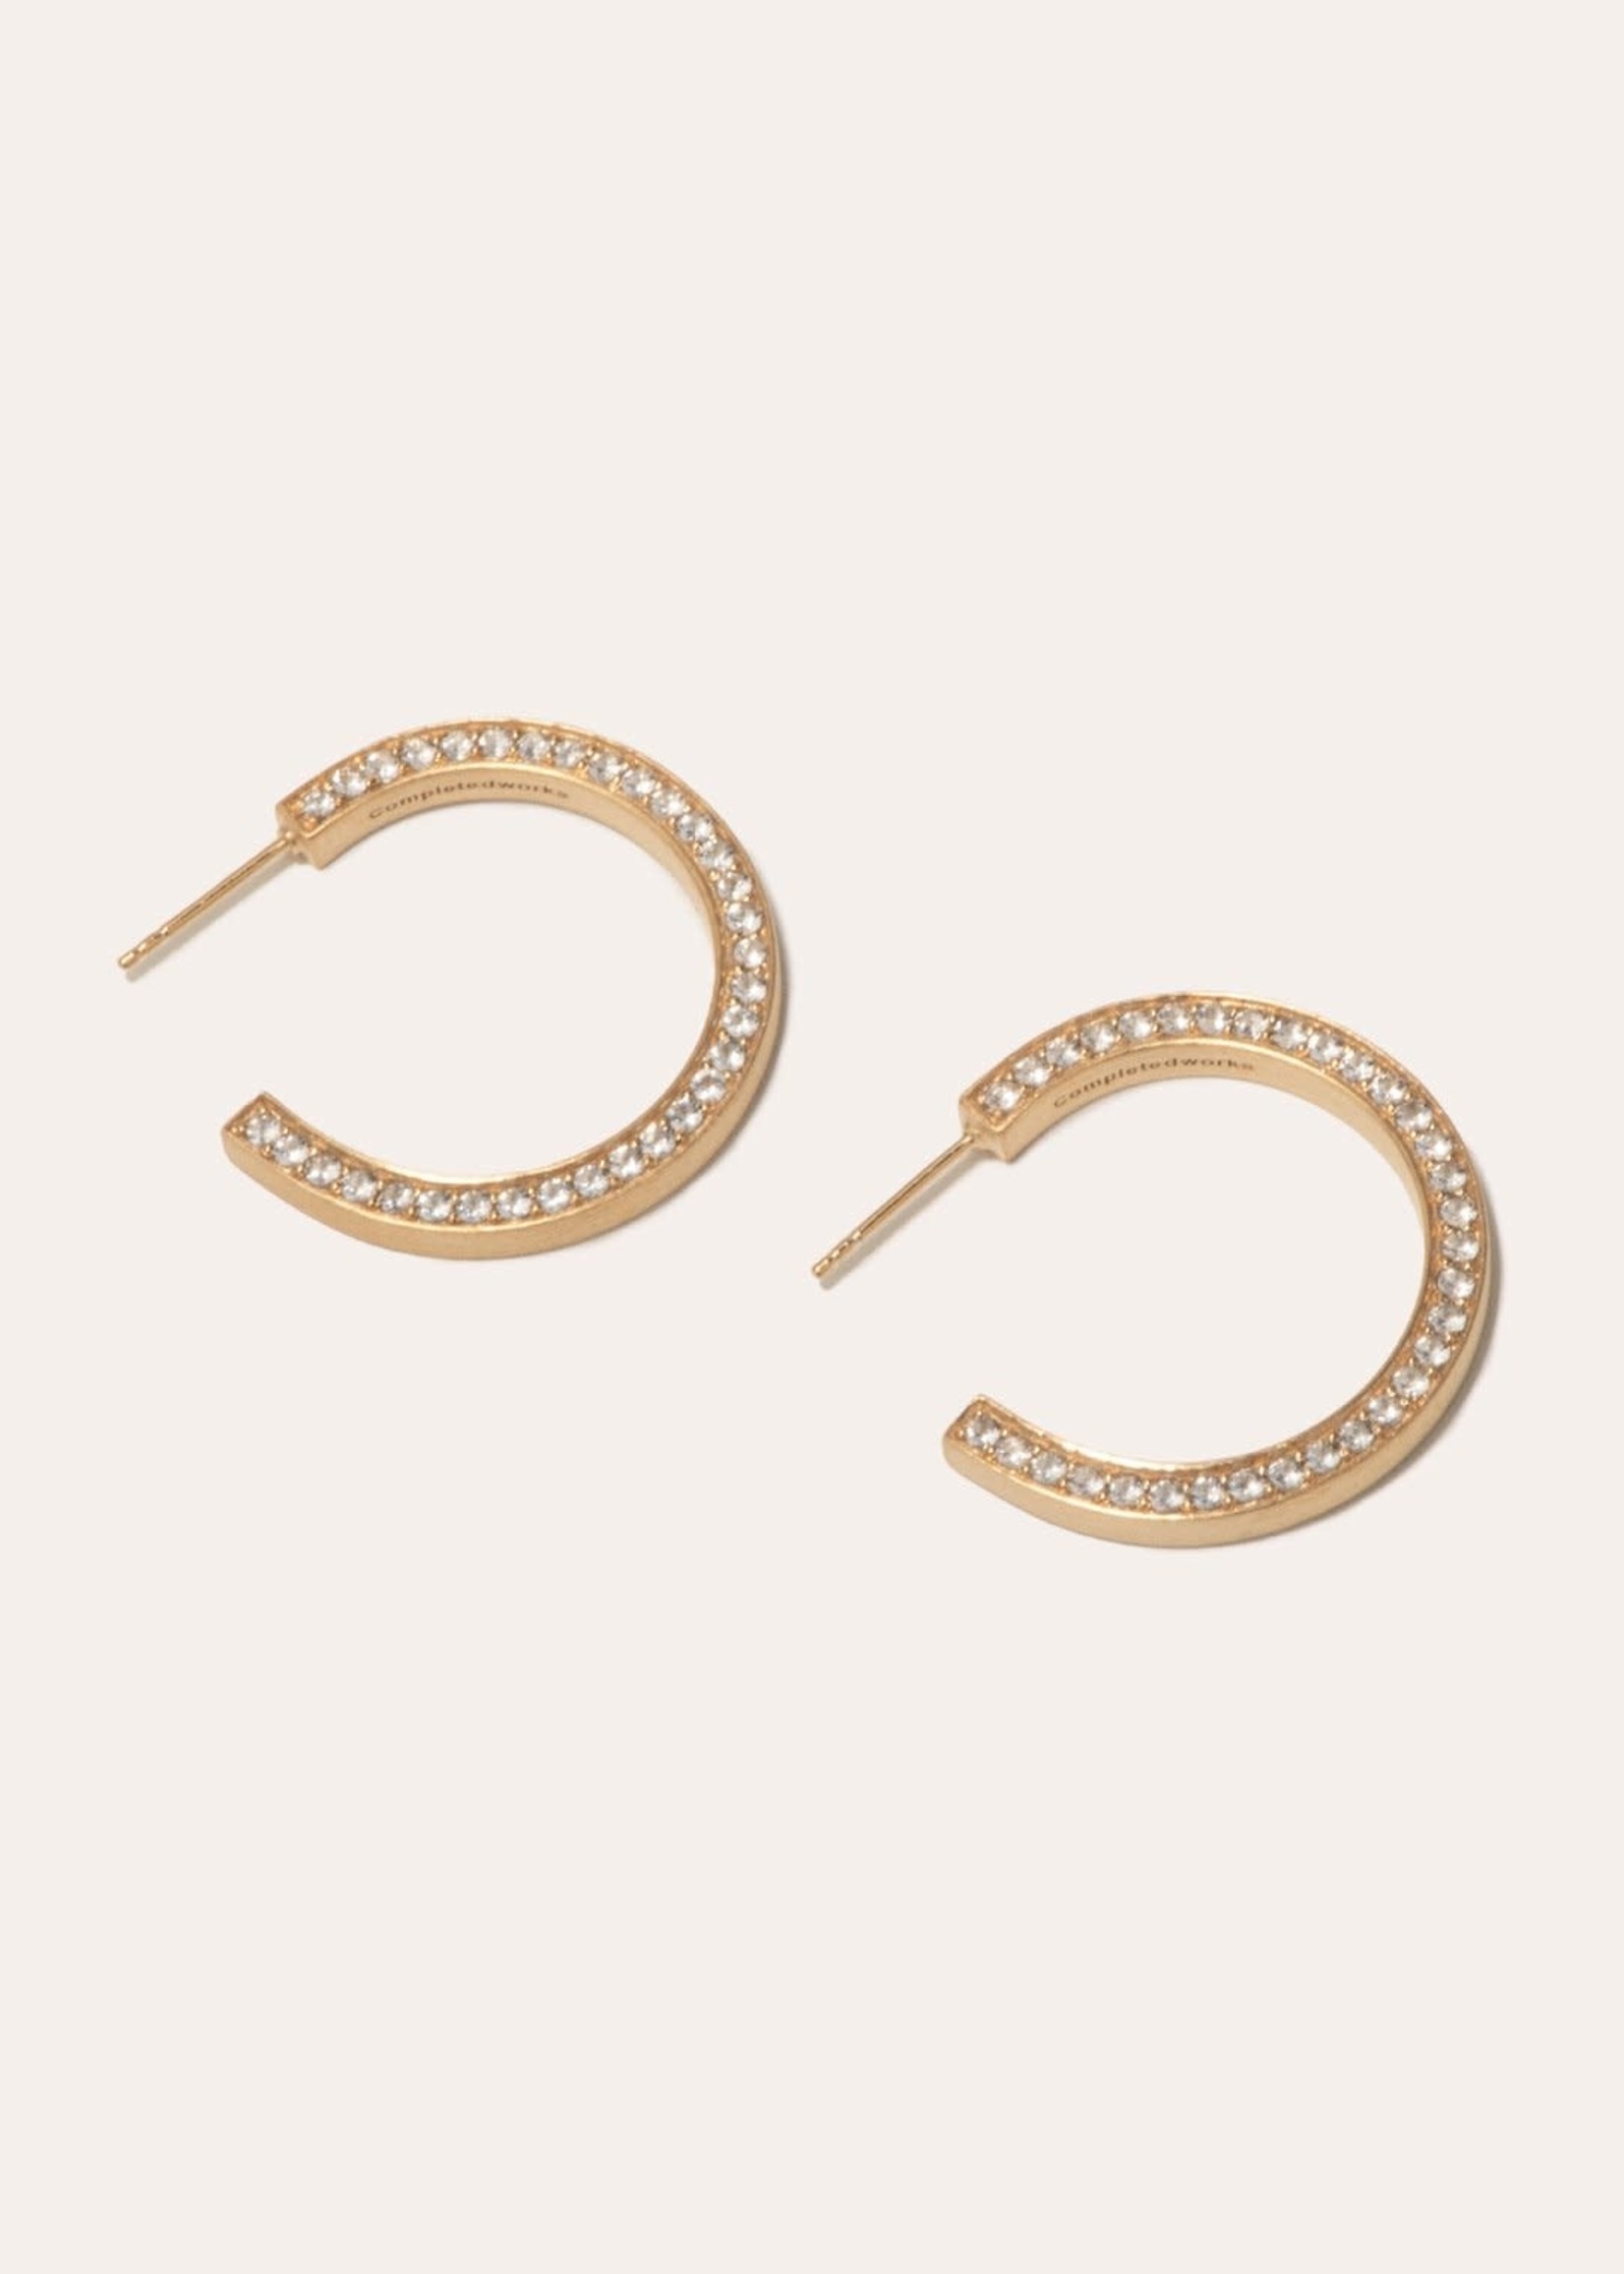 Completedworks C12 Hoop Earrings Gold Vermeil White Topaz